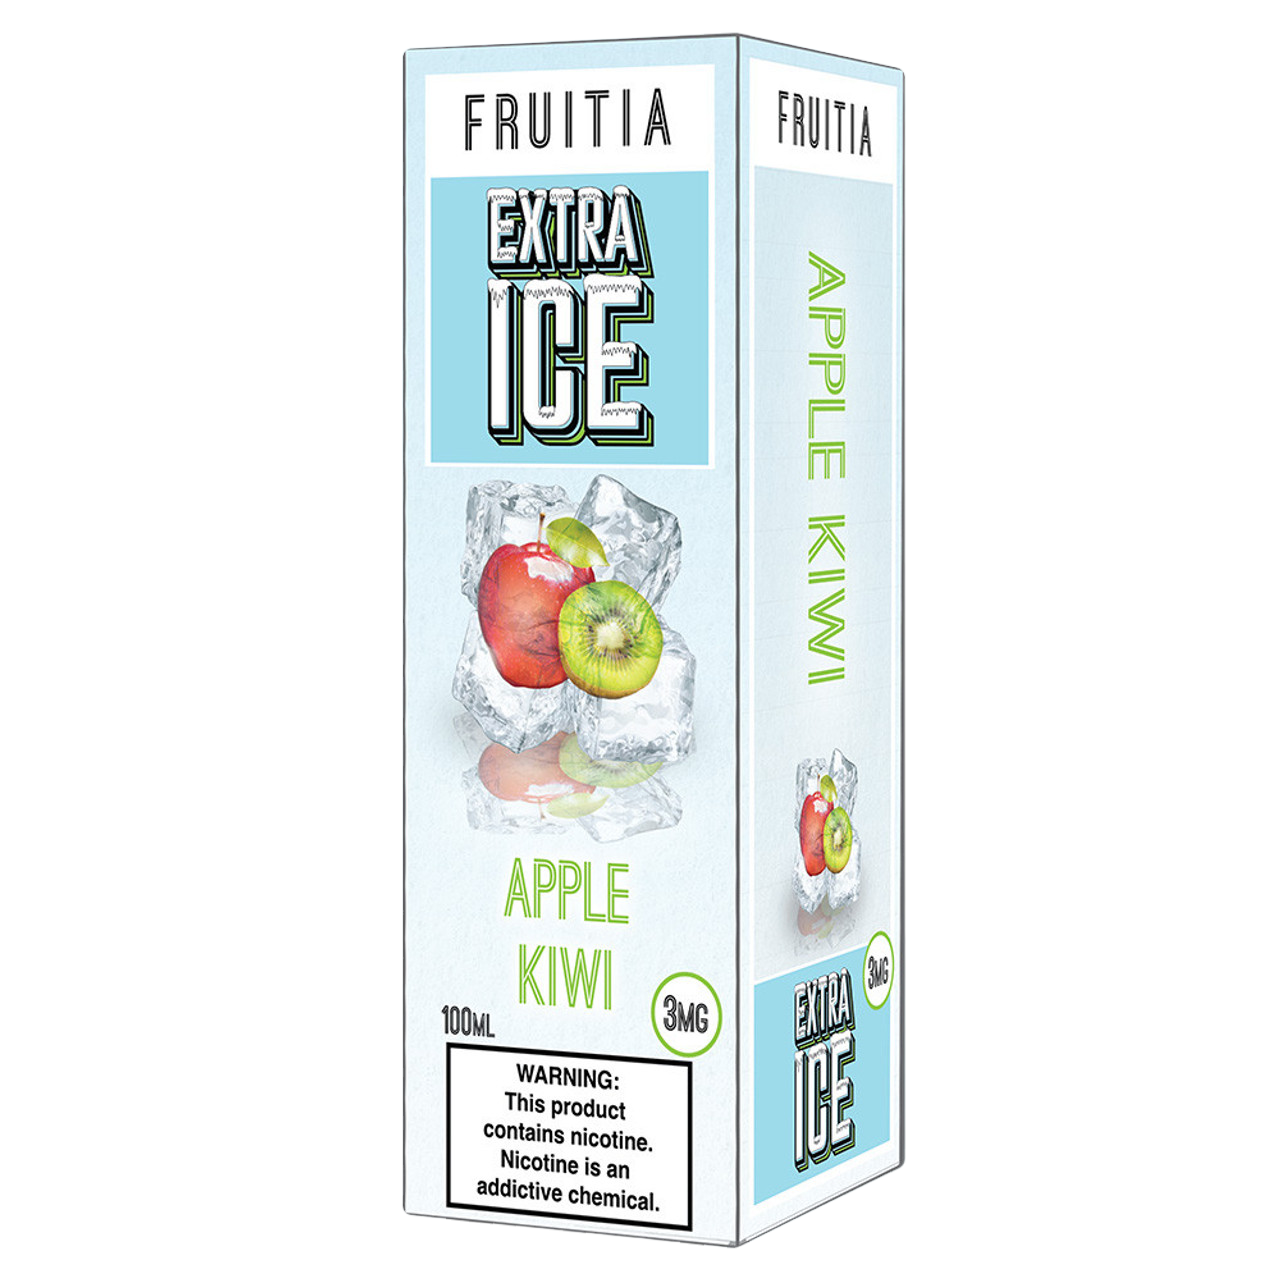 Fruitia Extra Ice E-Liquid 100ML - Apple Kiwi 